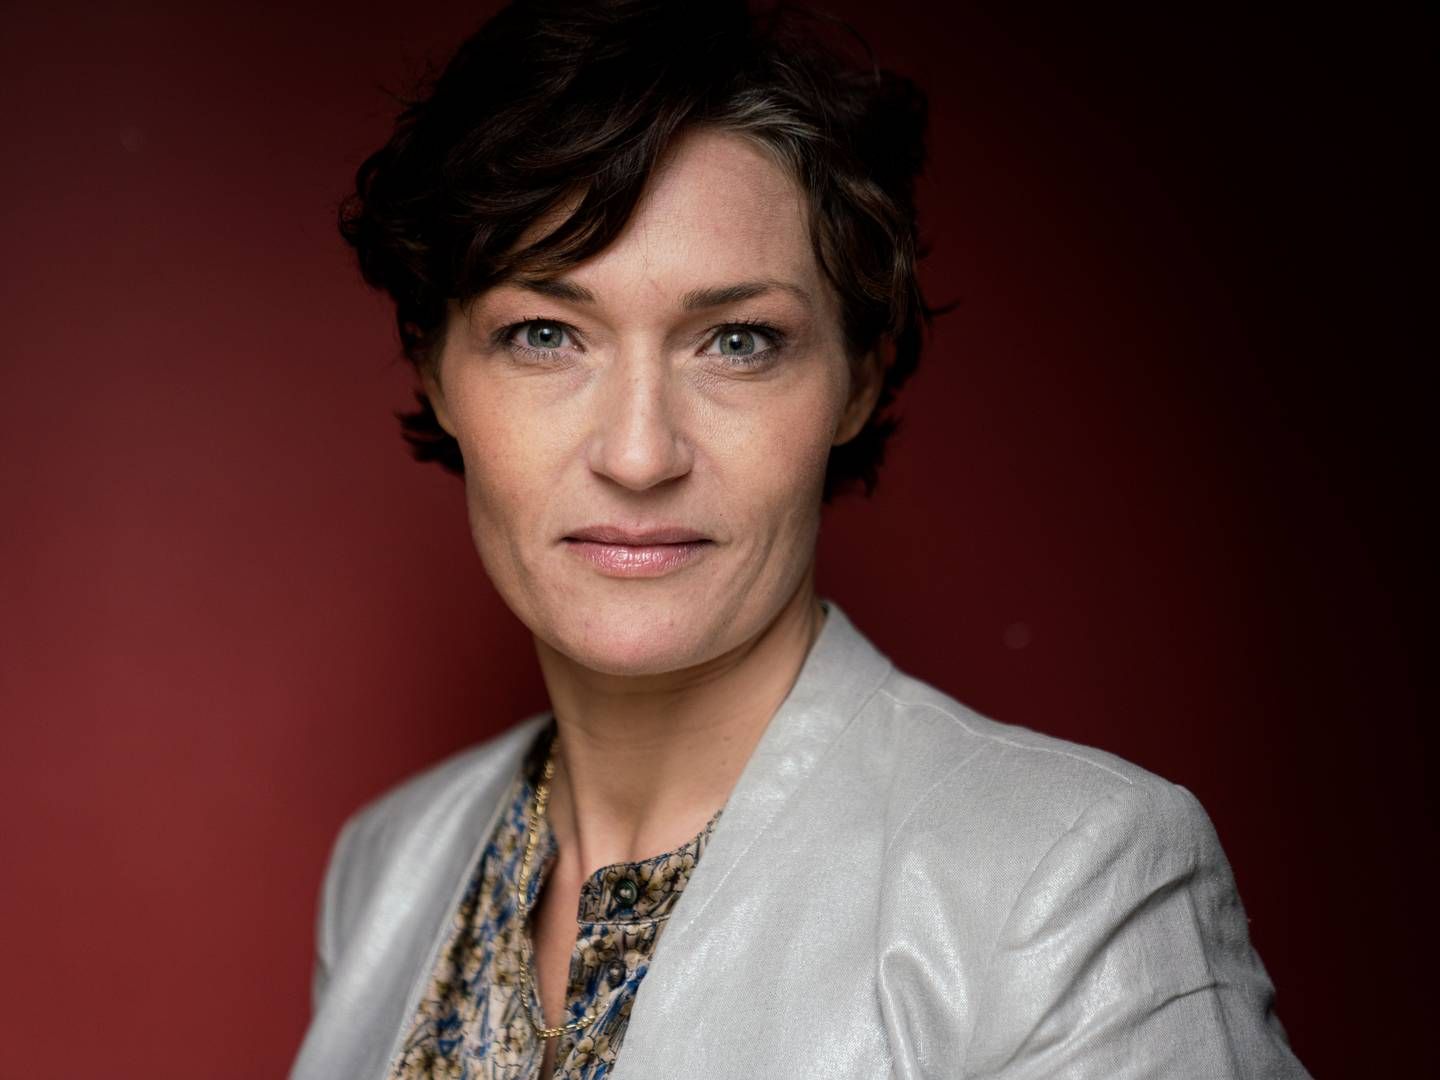 Iværksætter Mia Wagner overtager ministerpost. | Foto: Stine Bidstrup